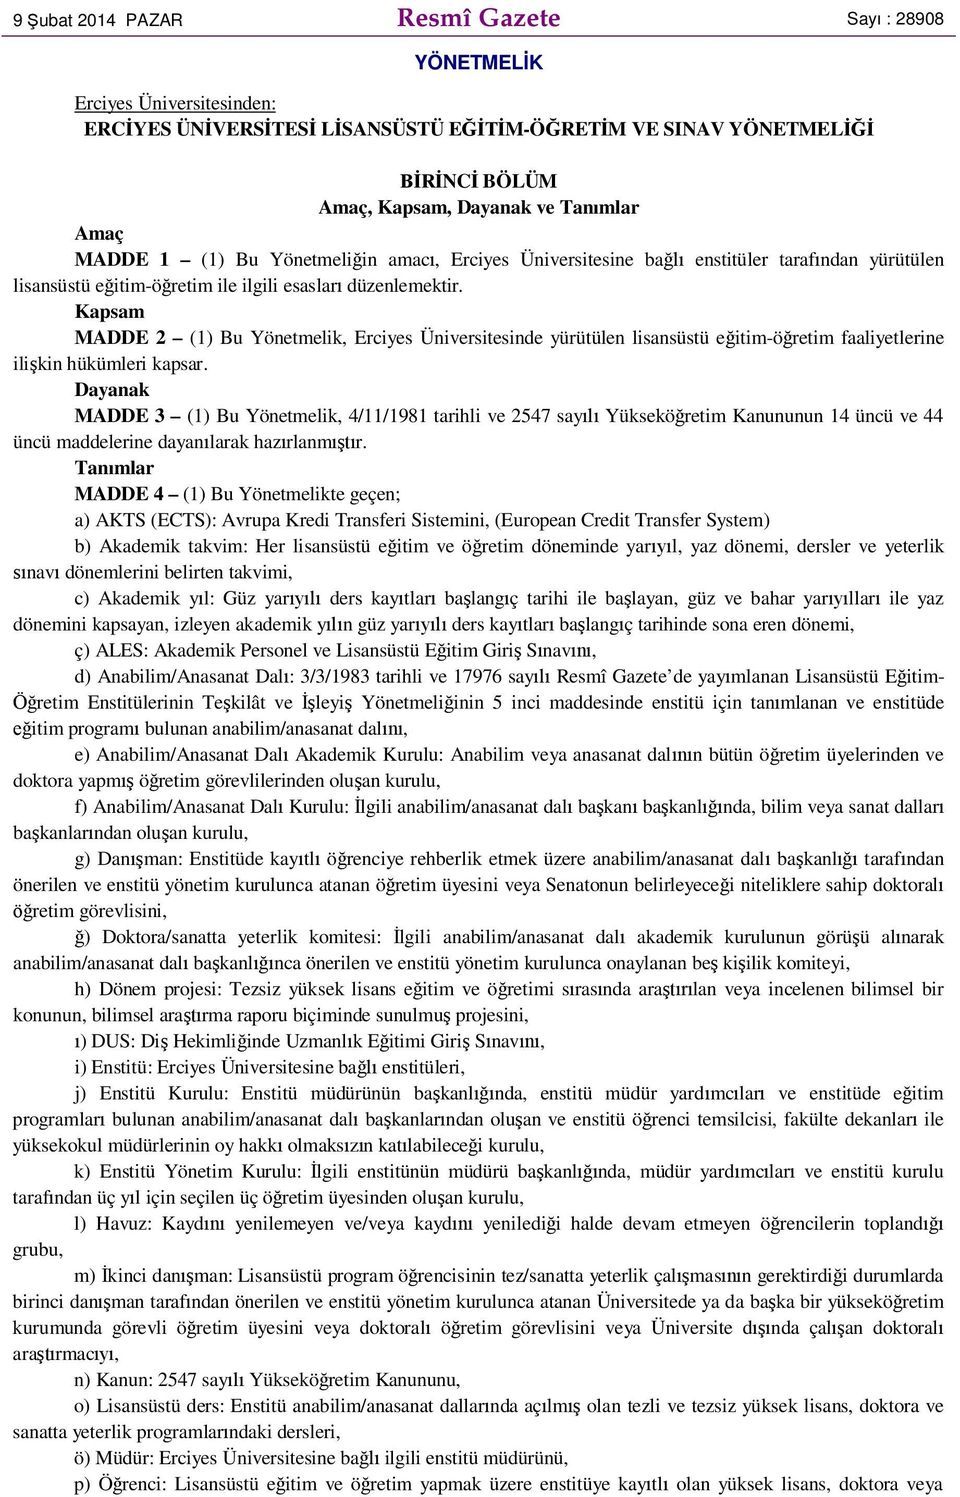 Kapsam MADDE 2 (1) Bu Yönetmelik, Erciyes Üniversitesinde yürütülen lisansüstü e itim-ö retim faaliyetlerine ili kin hükümleri kapsar.